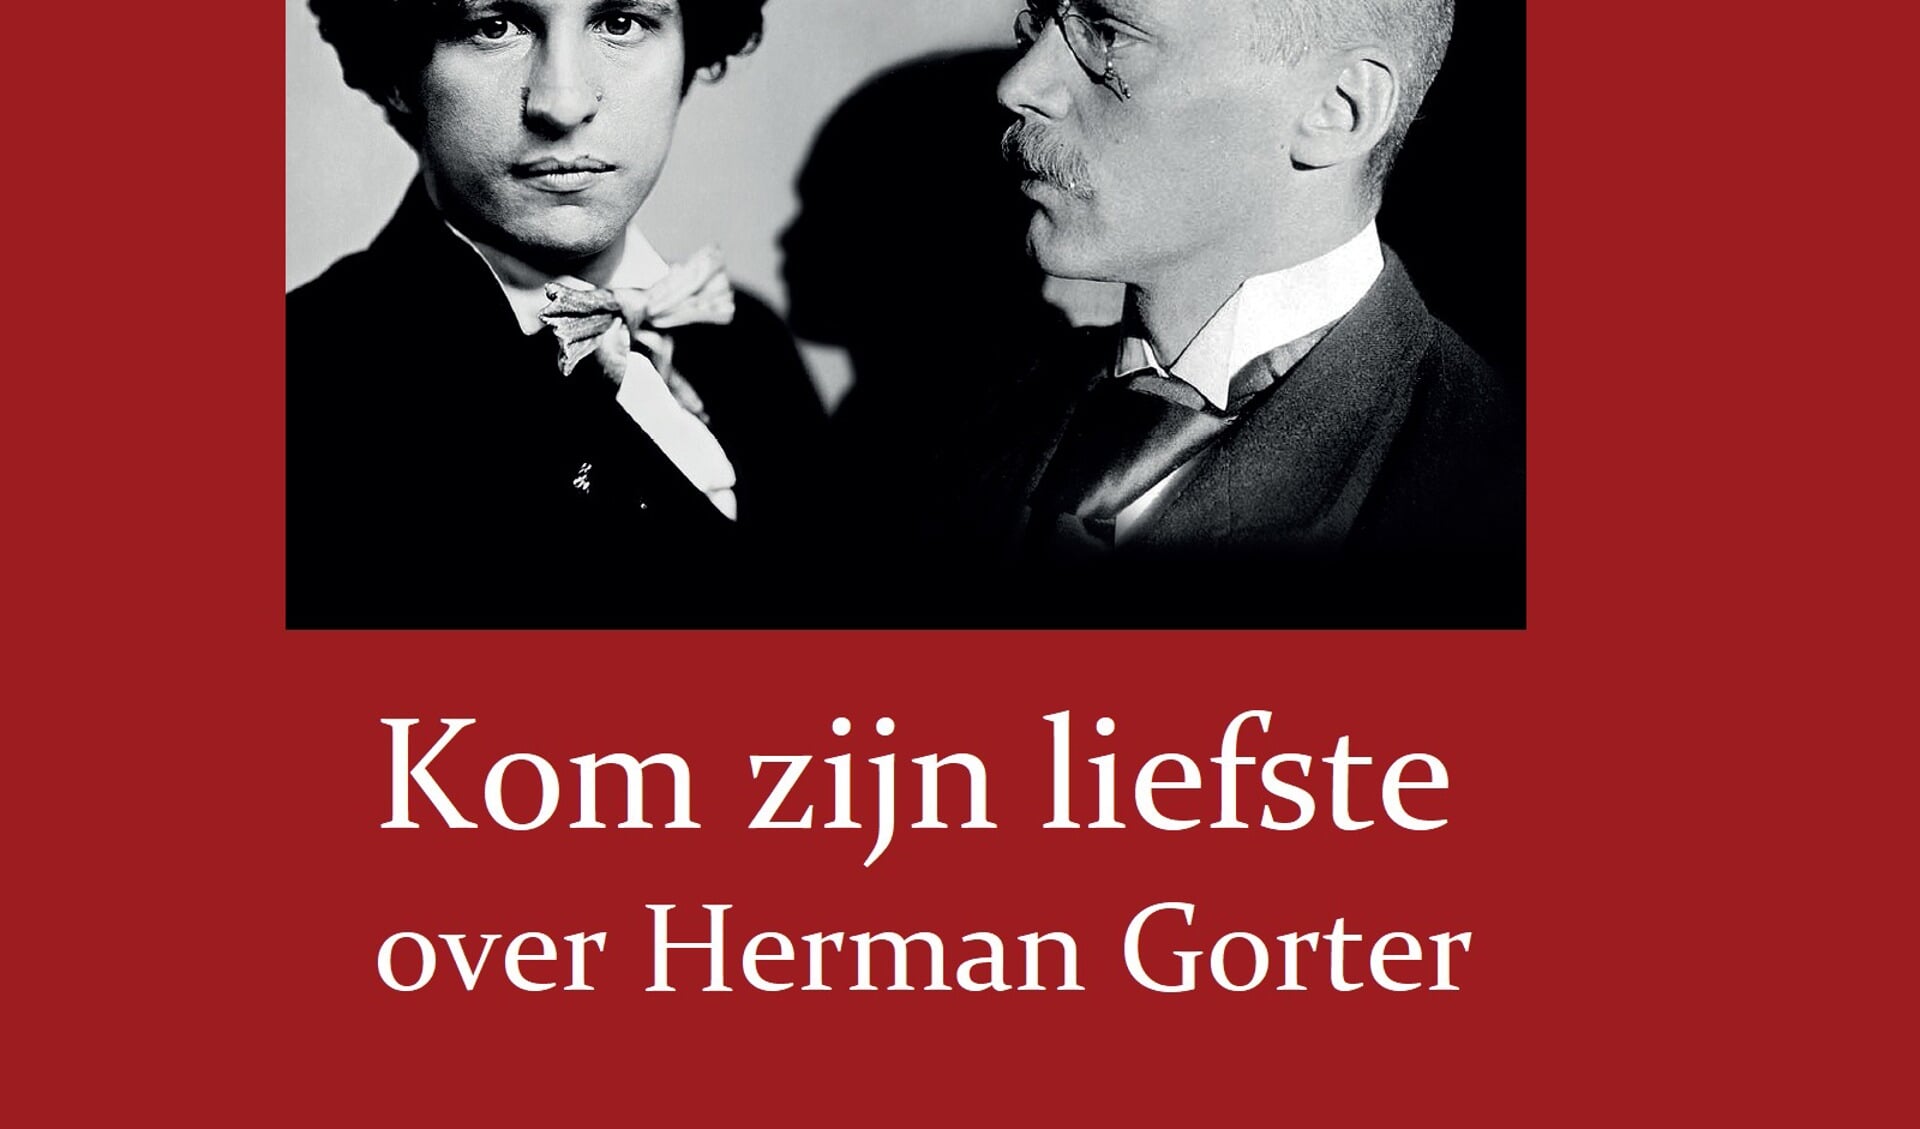 Podium Gorter zet zondag naamgever Herman Gorter in de schijnwerpers.